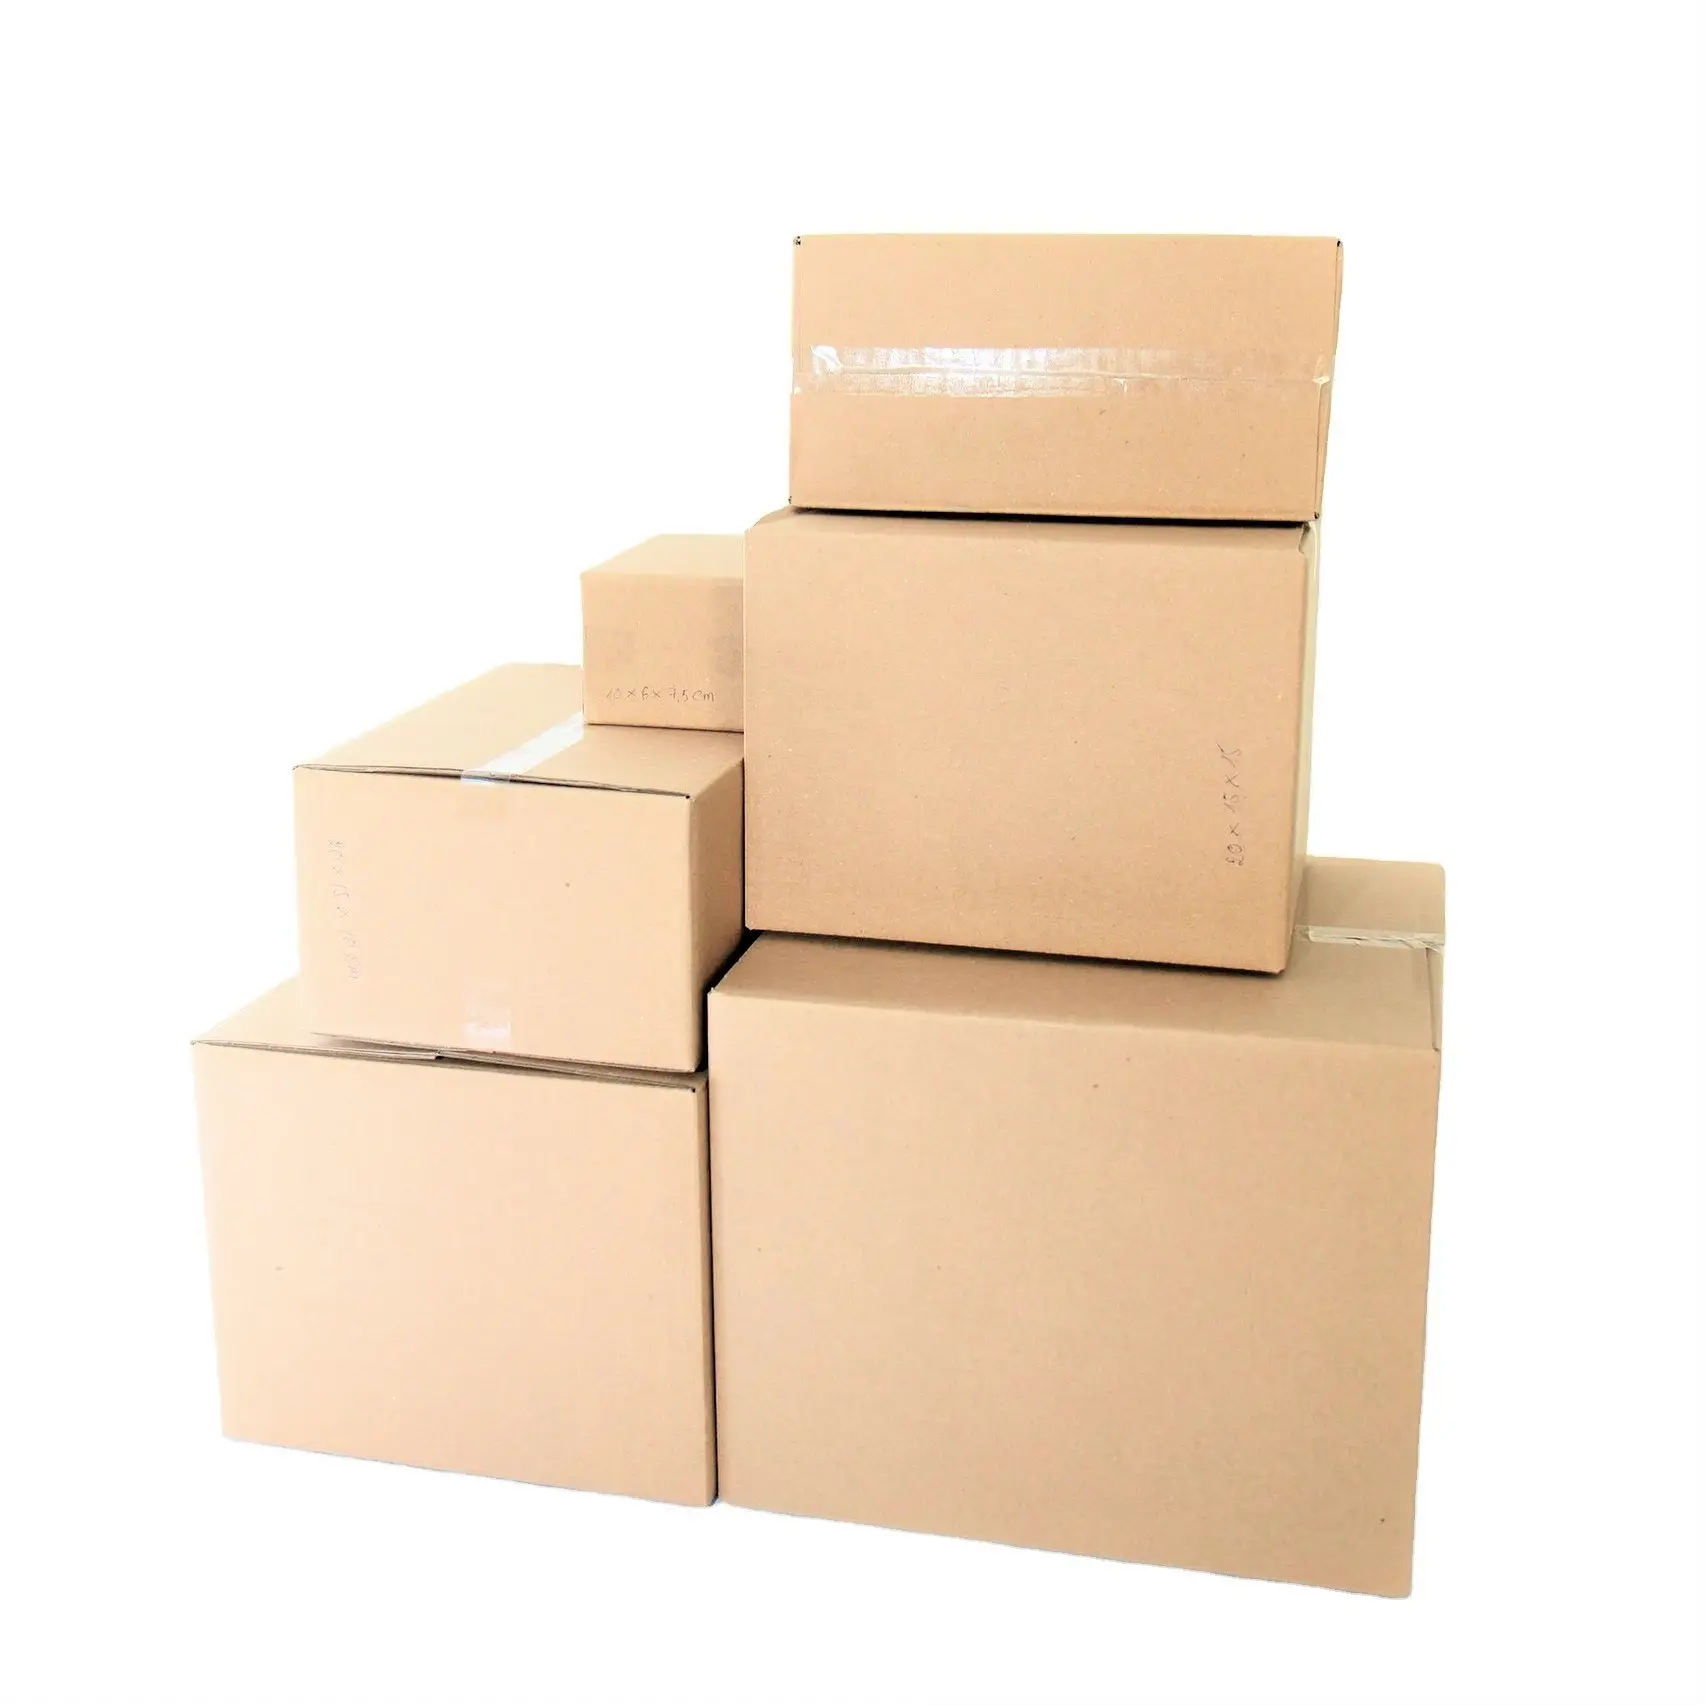 Miglior prezzo scatole di spedizione per imballaggio in carta scanalata marrone a 3 strati personalizzate